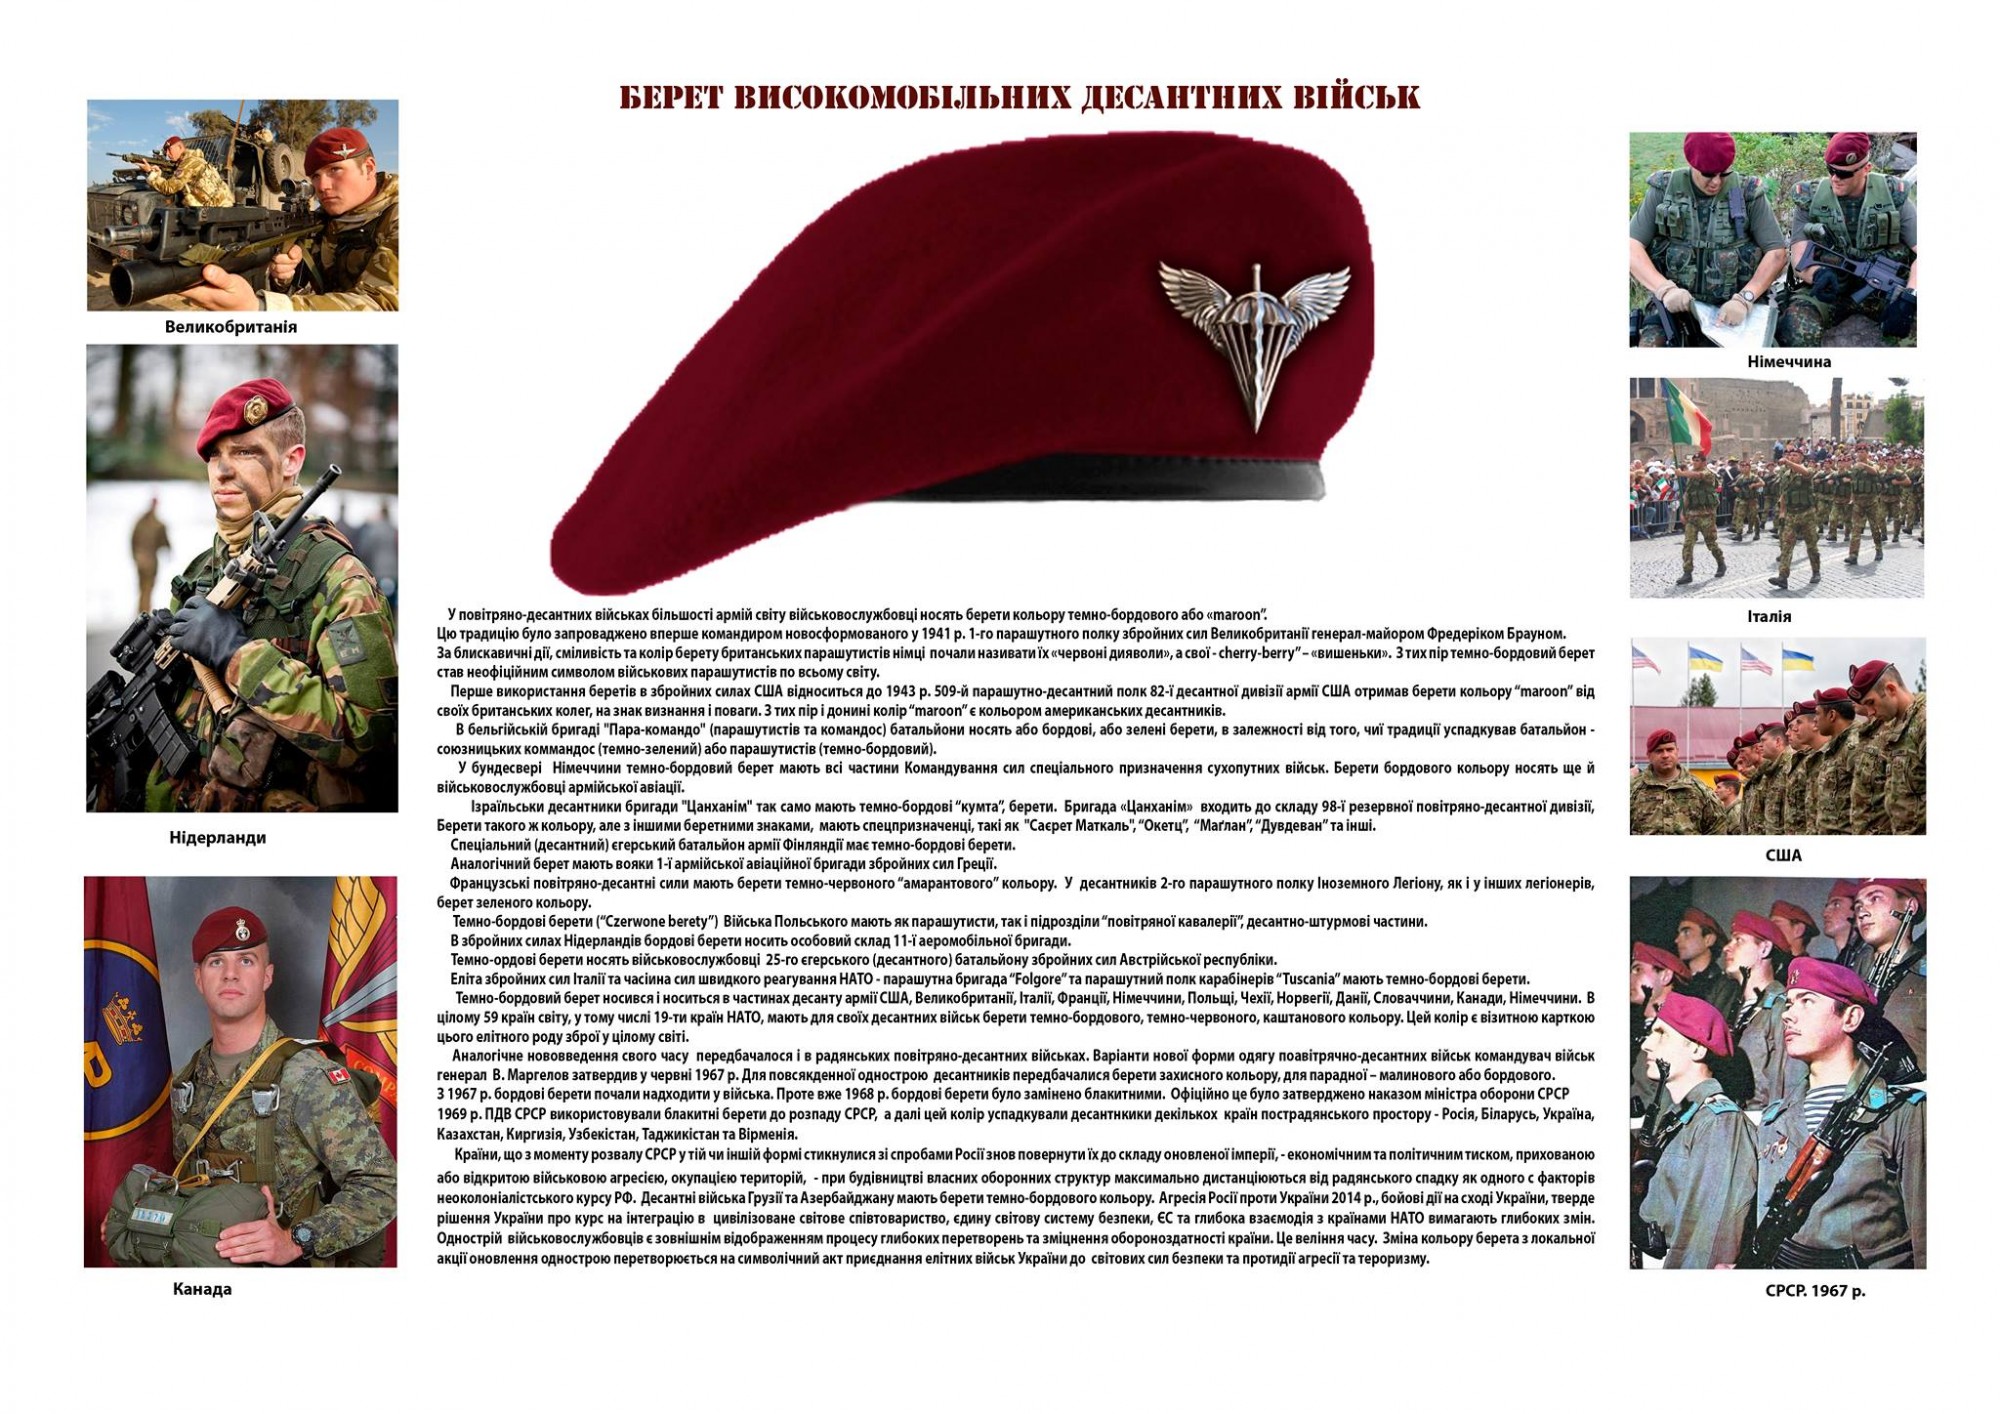 Боеспособность украинской армии - 20451748_1486883554704726_6643687885234706362_o.jpg